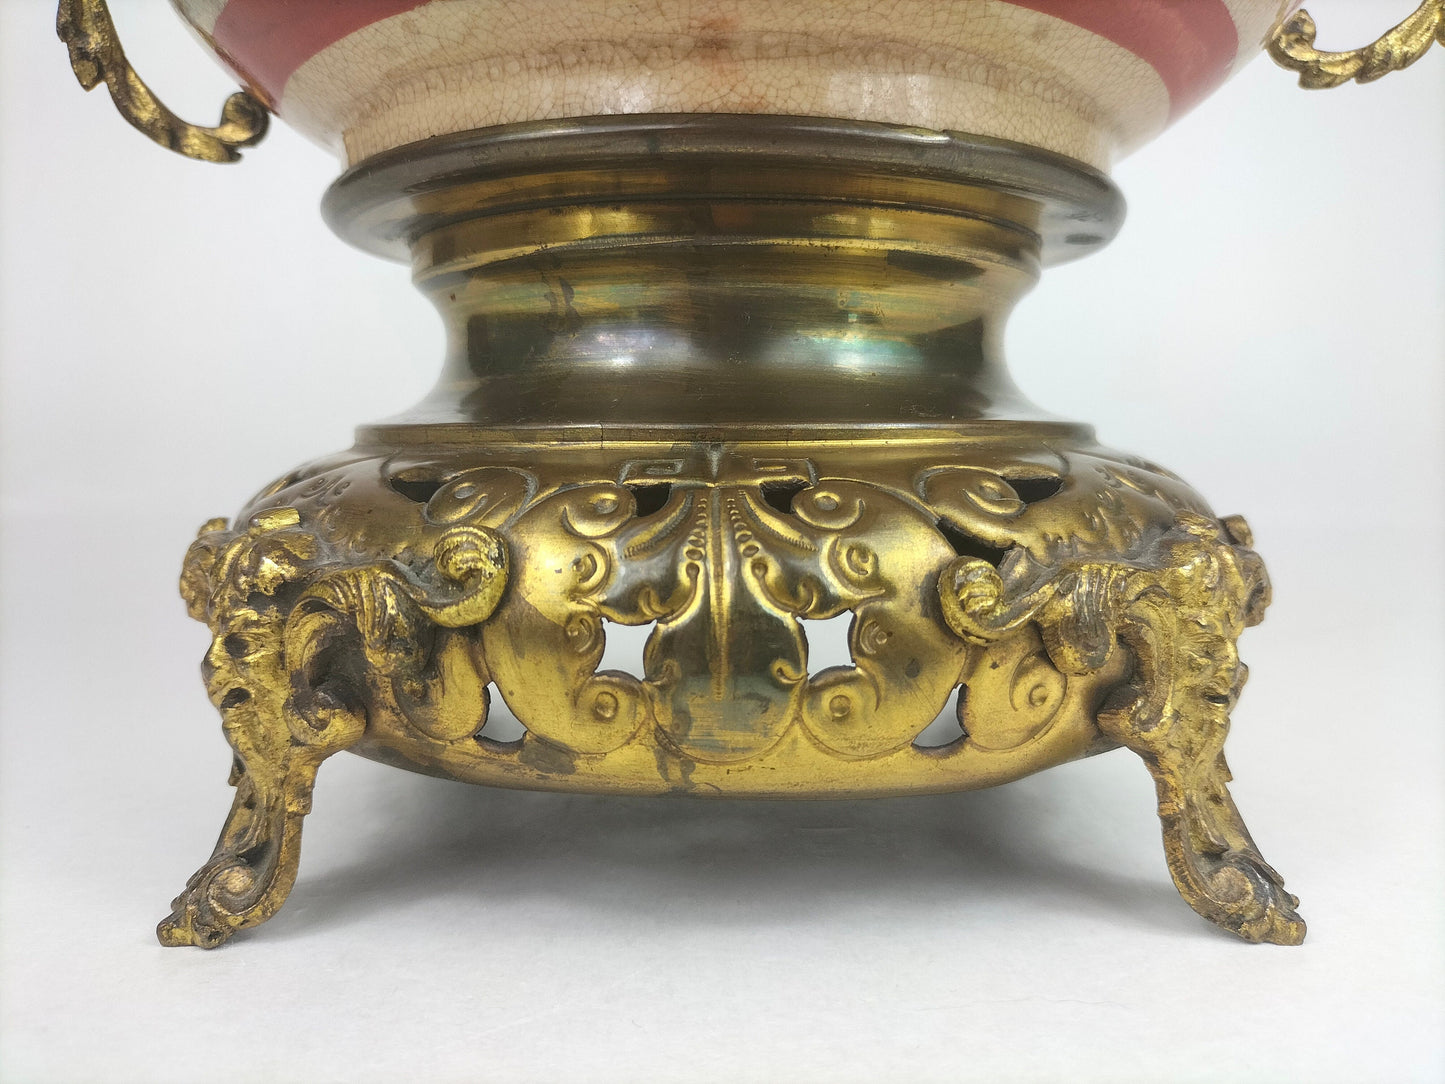 Bình satsuma cổ của Nhật Bản được trang trí bằng đồng mạ vàng // thế kỷ 19 - Thời Minh Trị